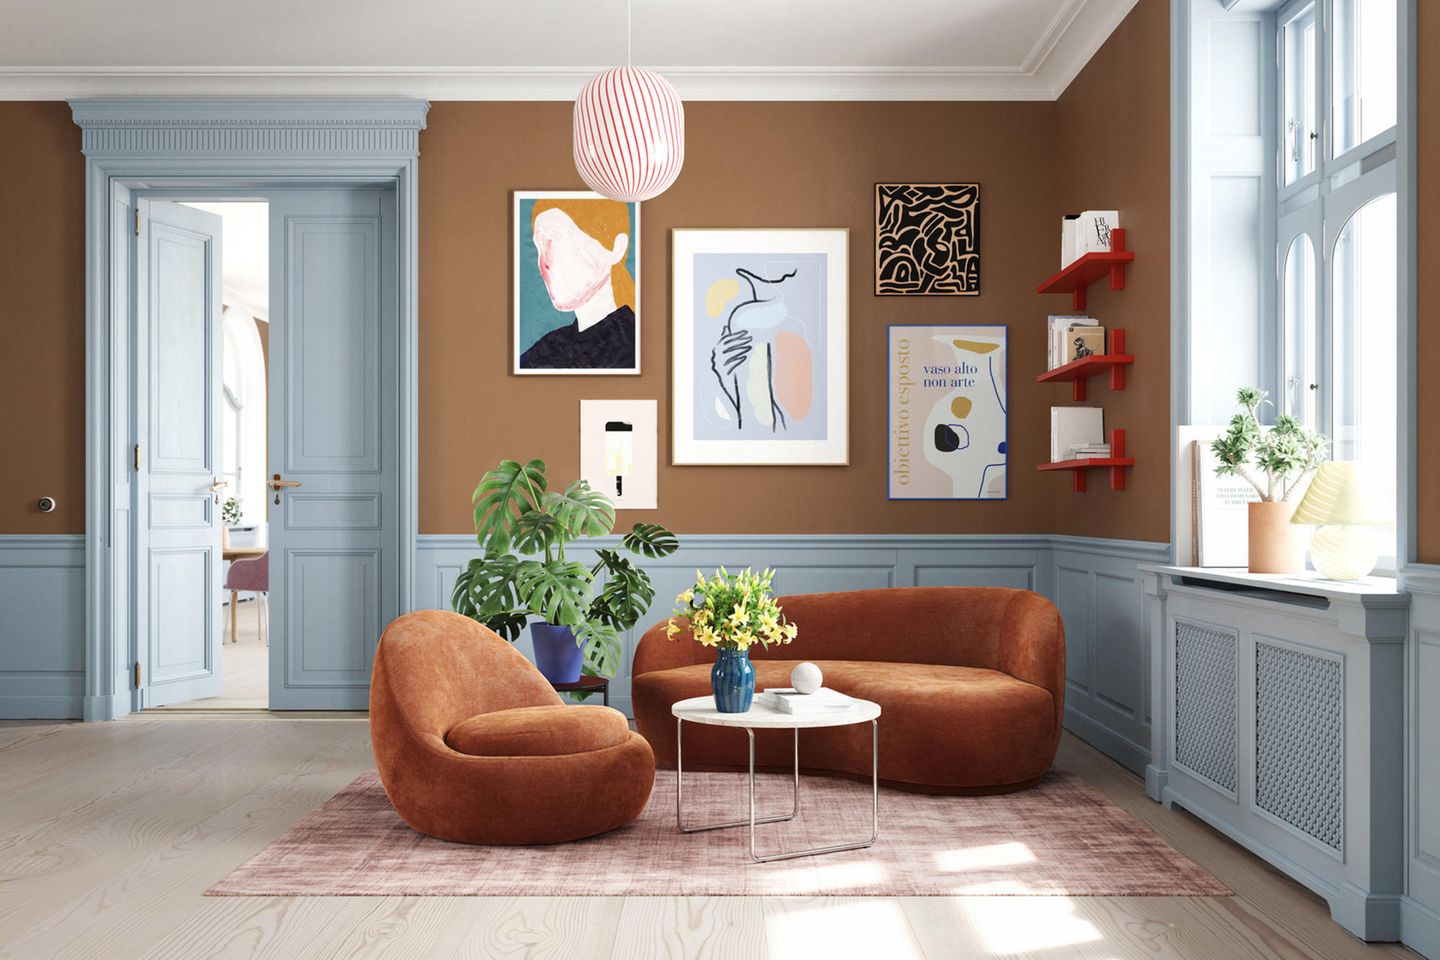 Polstergarnitur von Sofacompany in einem Altbauwohnzimmer mit brauner Wand und hellblauen Holzelementen